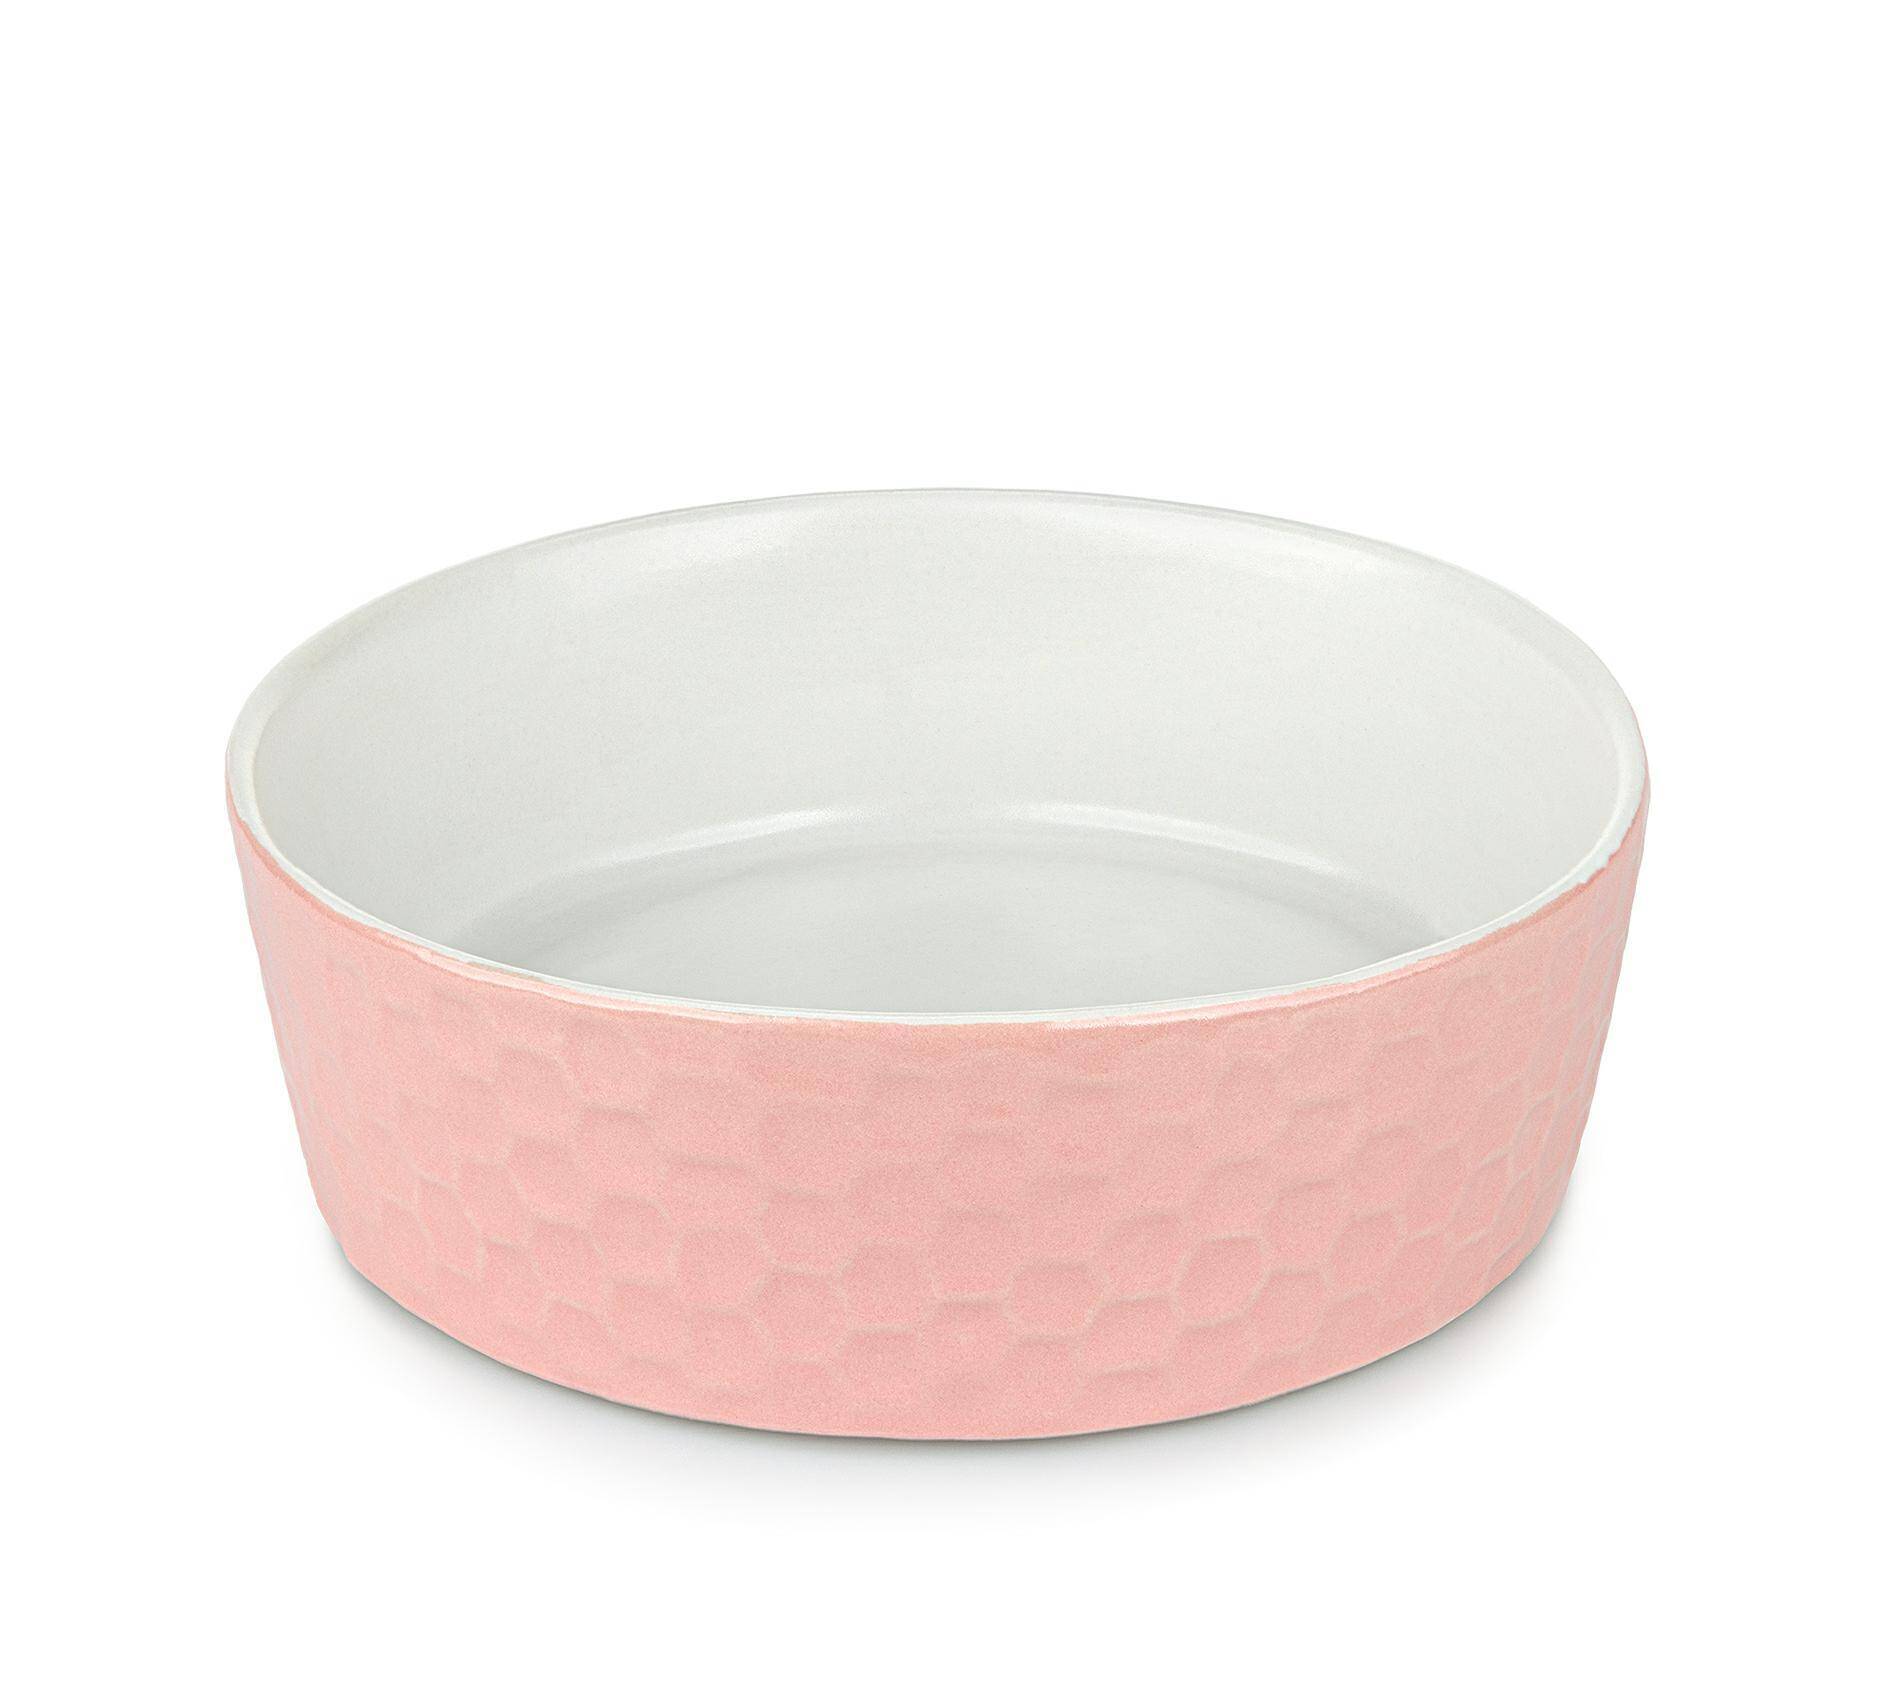 Miska ceramiczna 15cm różowa